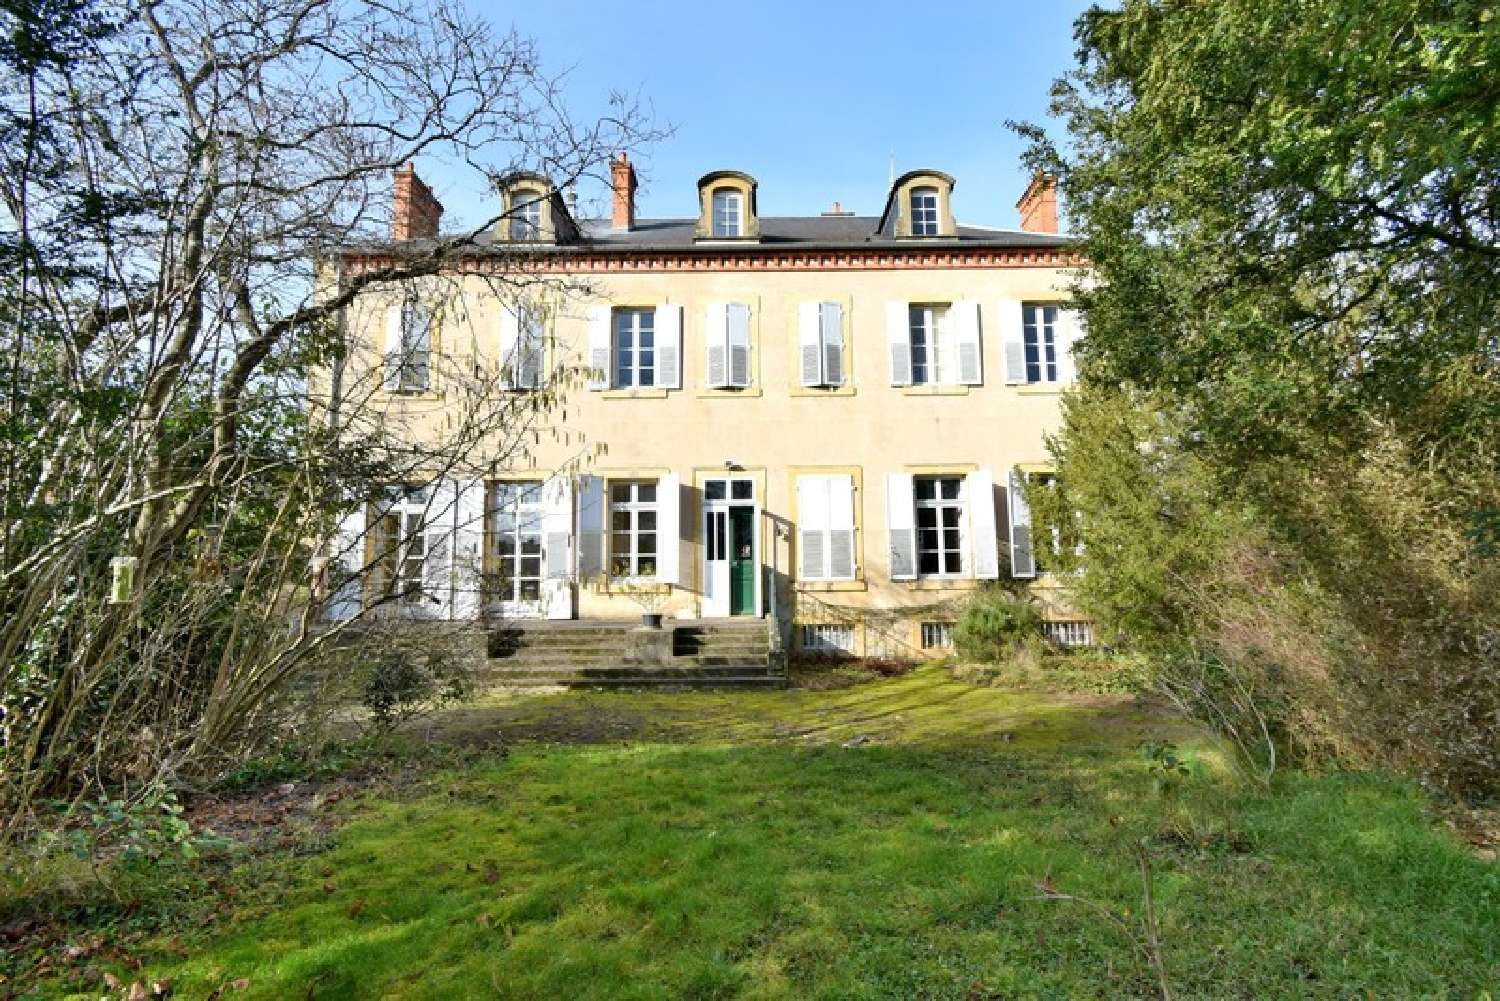  à vendre maison bourgeoise Bourbon-Lancy Saône-et-Loire 1